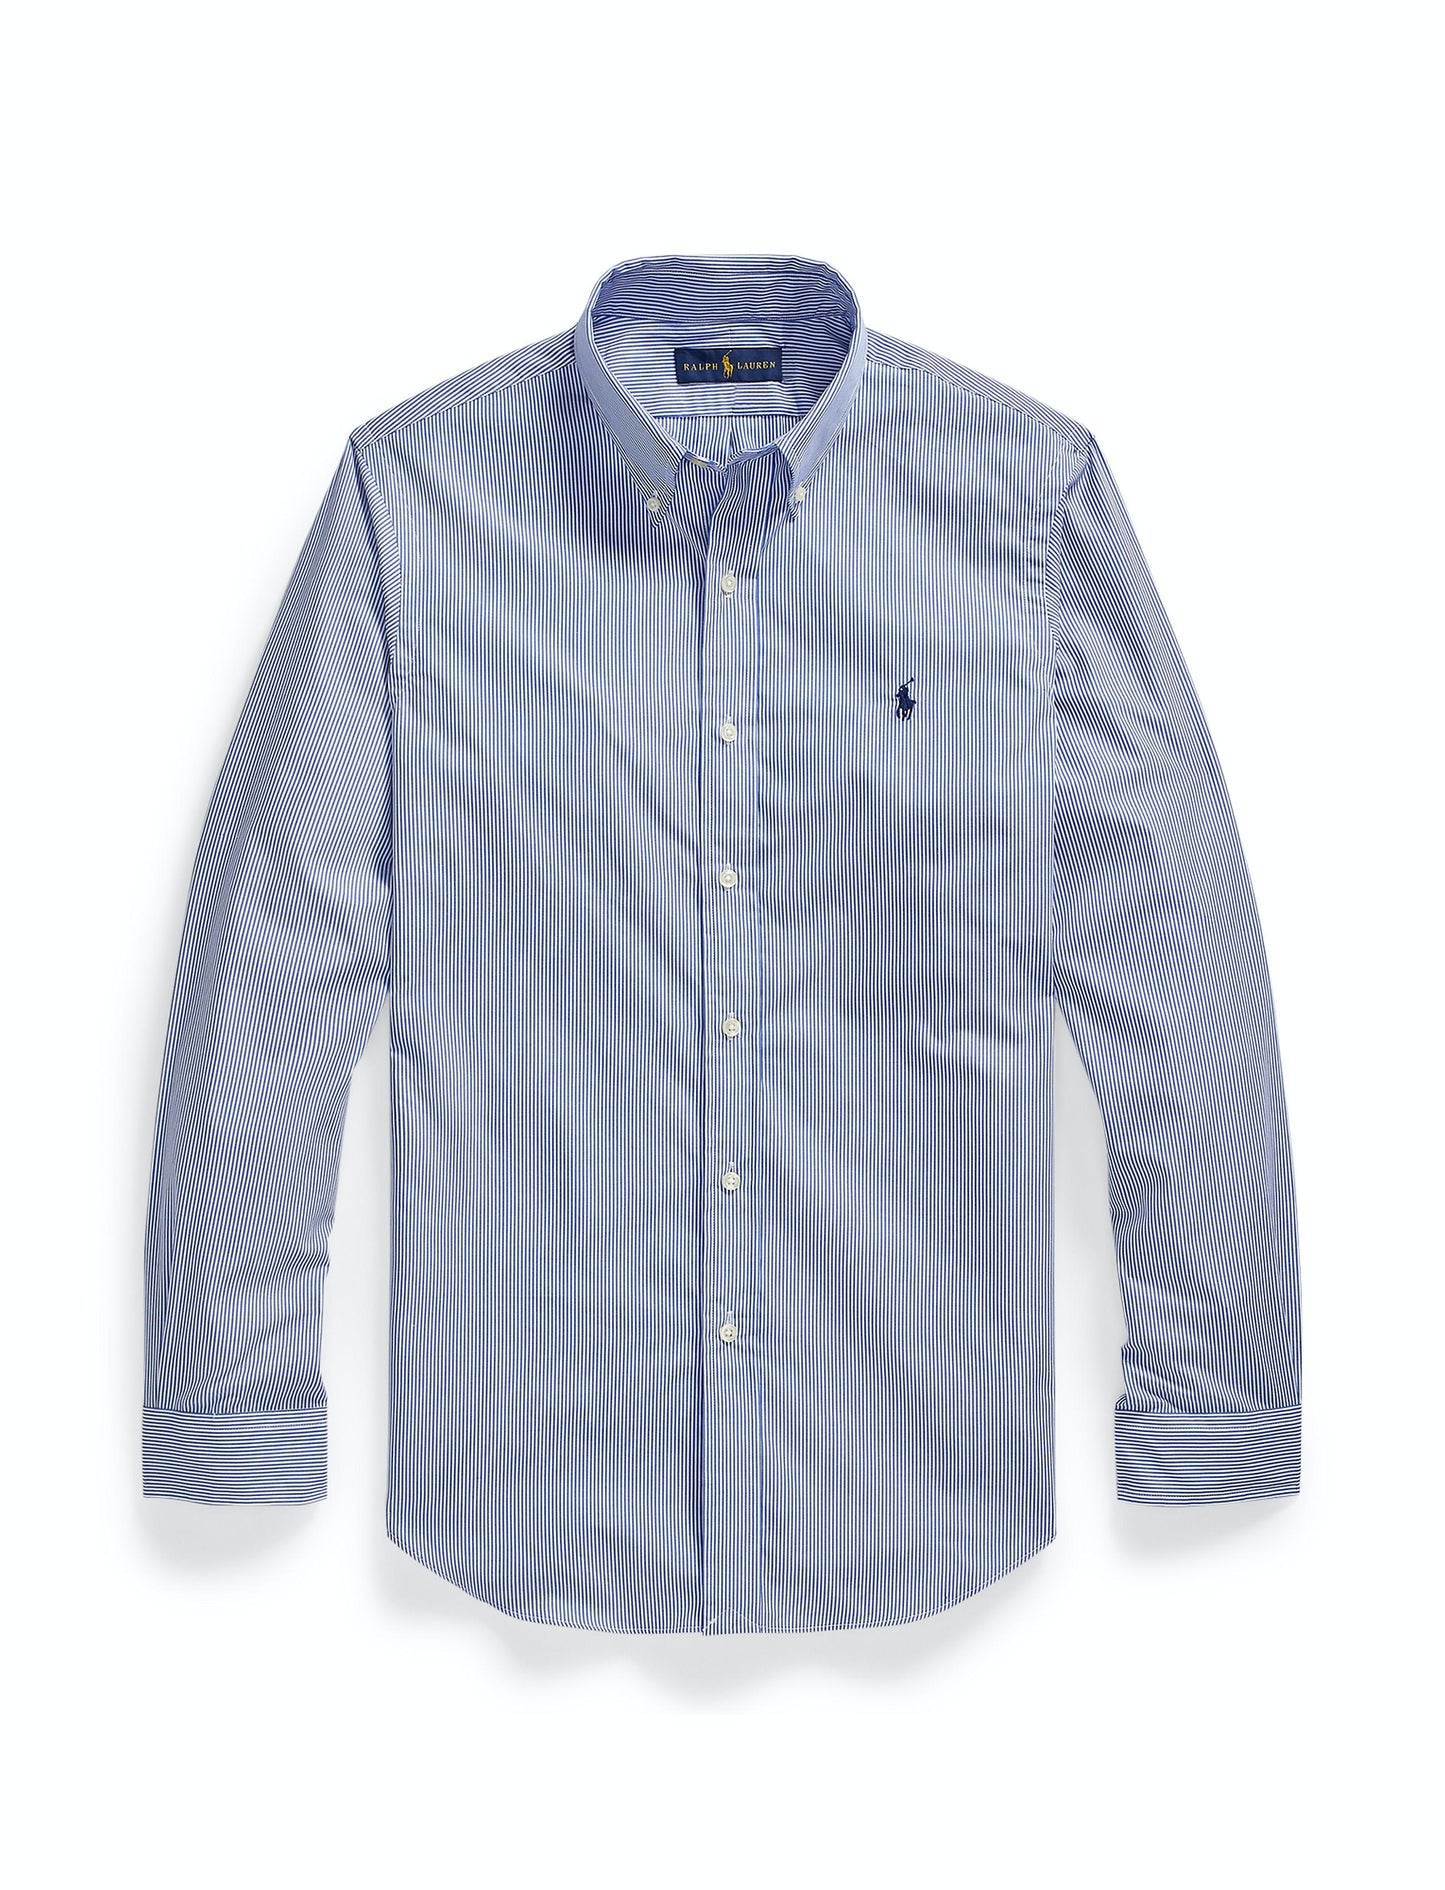 Polo Ralph Lauren Custom Fit Striped Shirt Blue – 